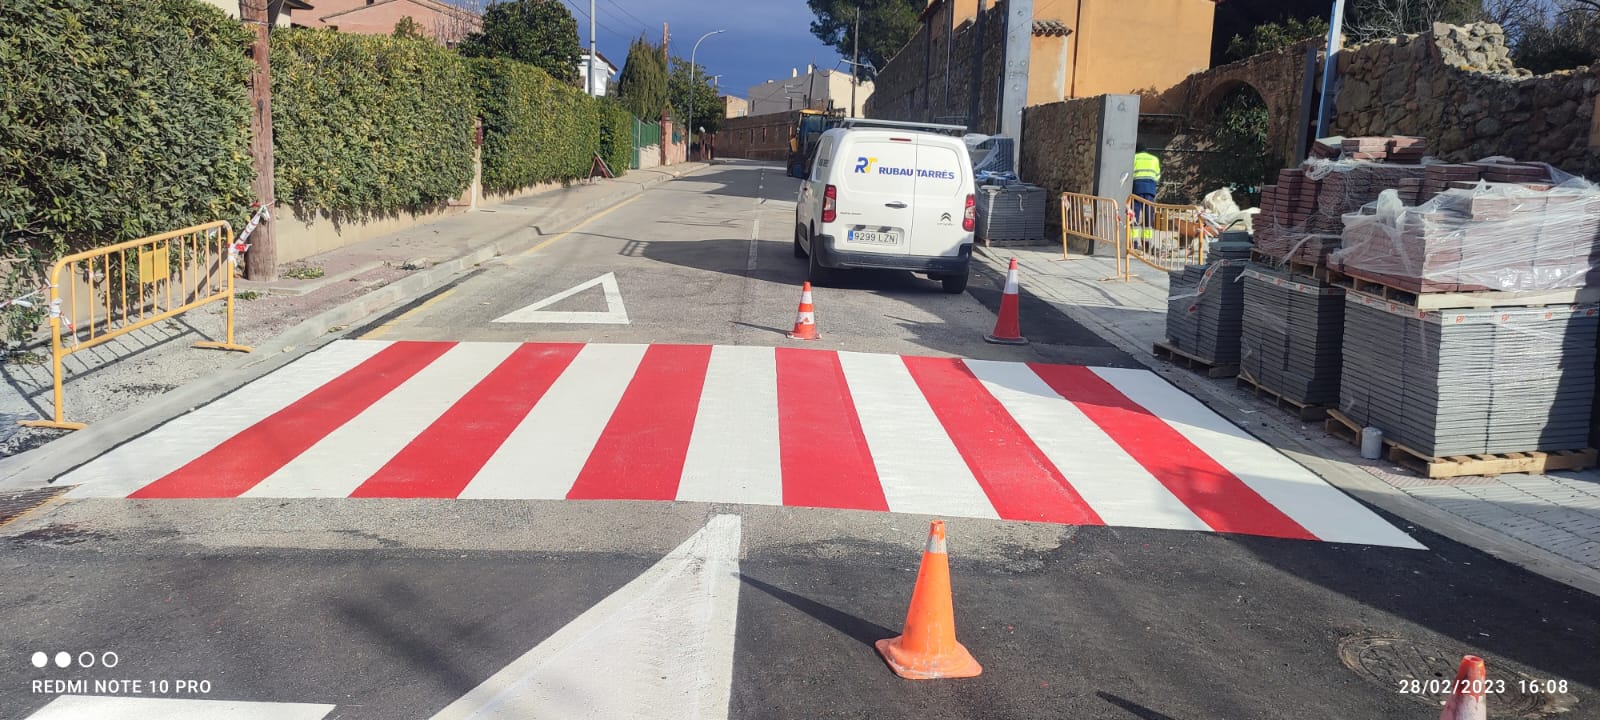 Pasos de peatones en Pals, Girona Hoy Crossbasa se ha encargado de llevar a cabo la pintura de tres pasos de peatones en Pals, Girona